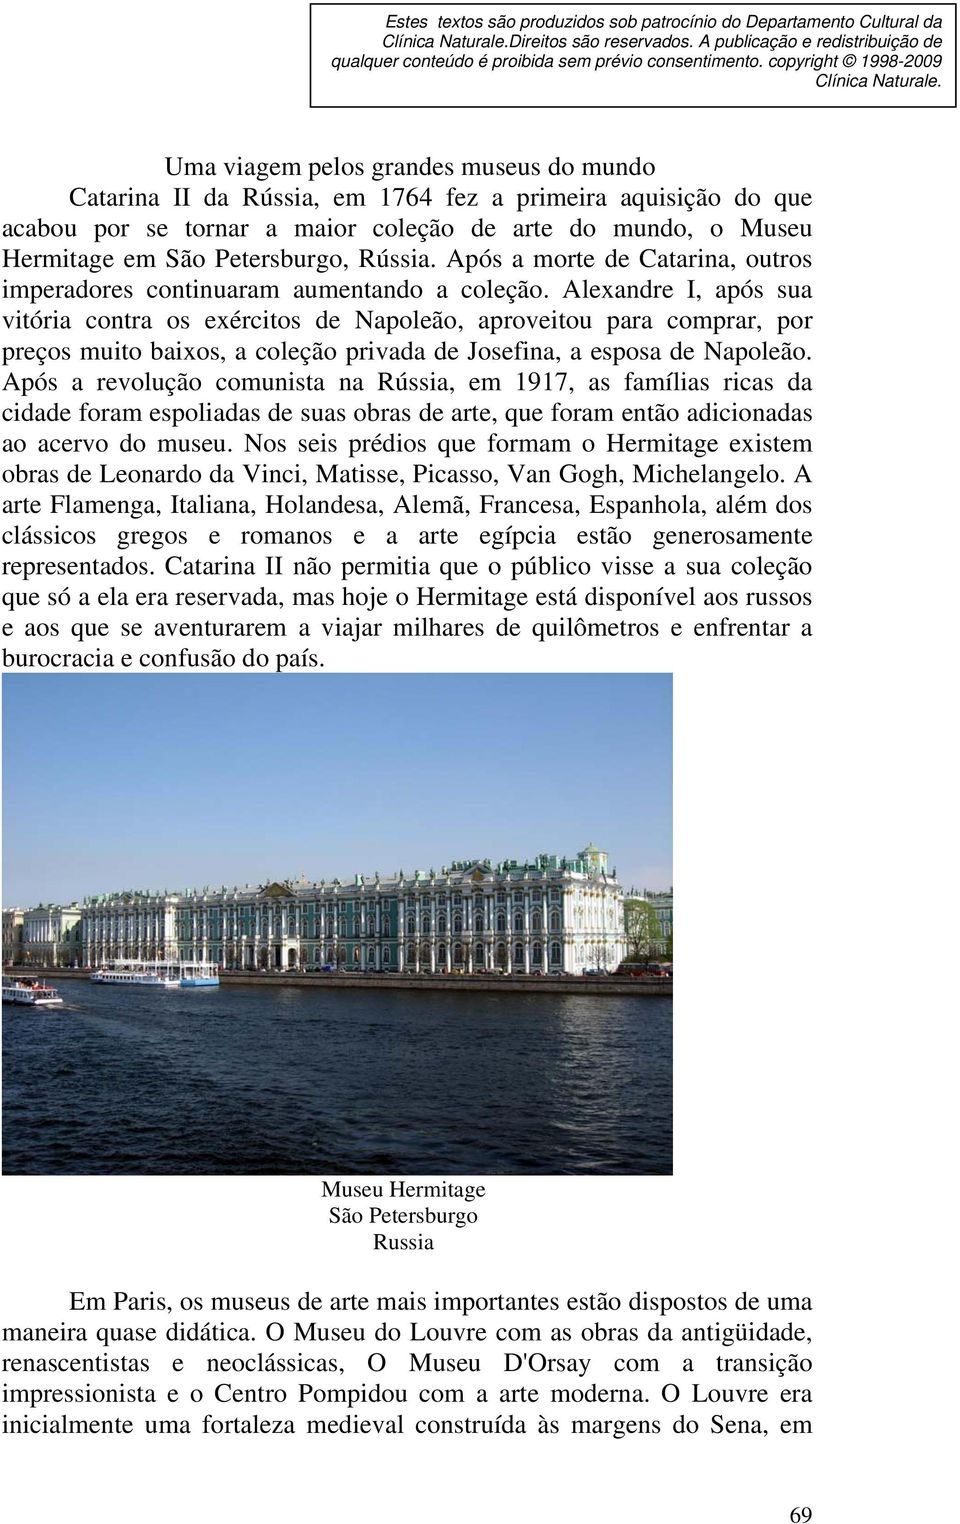 Uma viagem pelos grandes museus do mundo Catarina II da Rússia, em 1764 fez a primeira aquisição do que acabou por se tornar a maior coleção de arte do mundo, o Museu Hermitage em São Petersburgo,